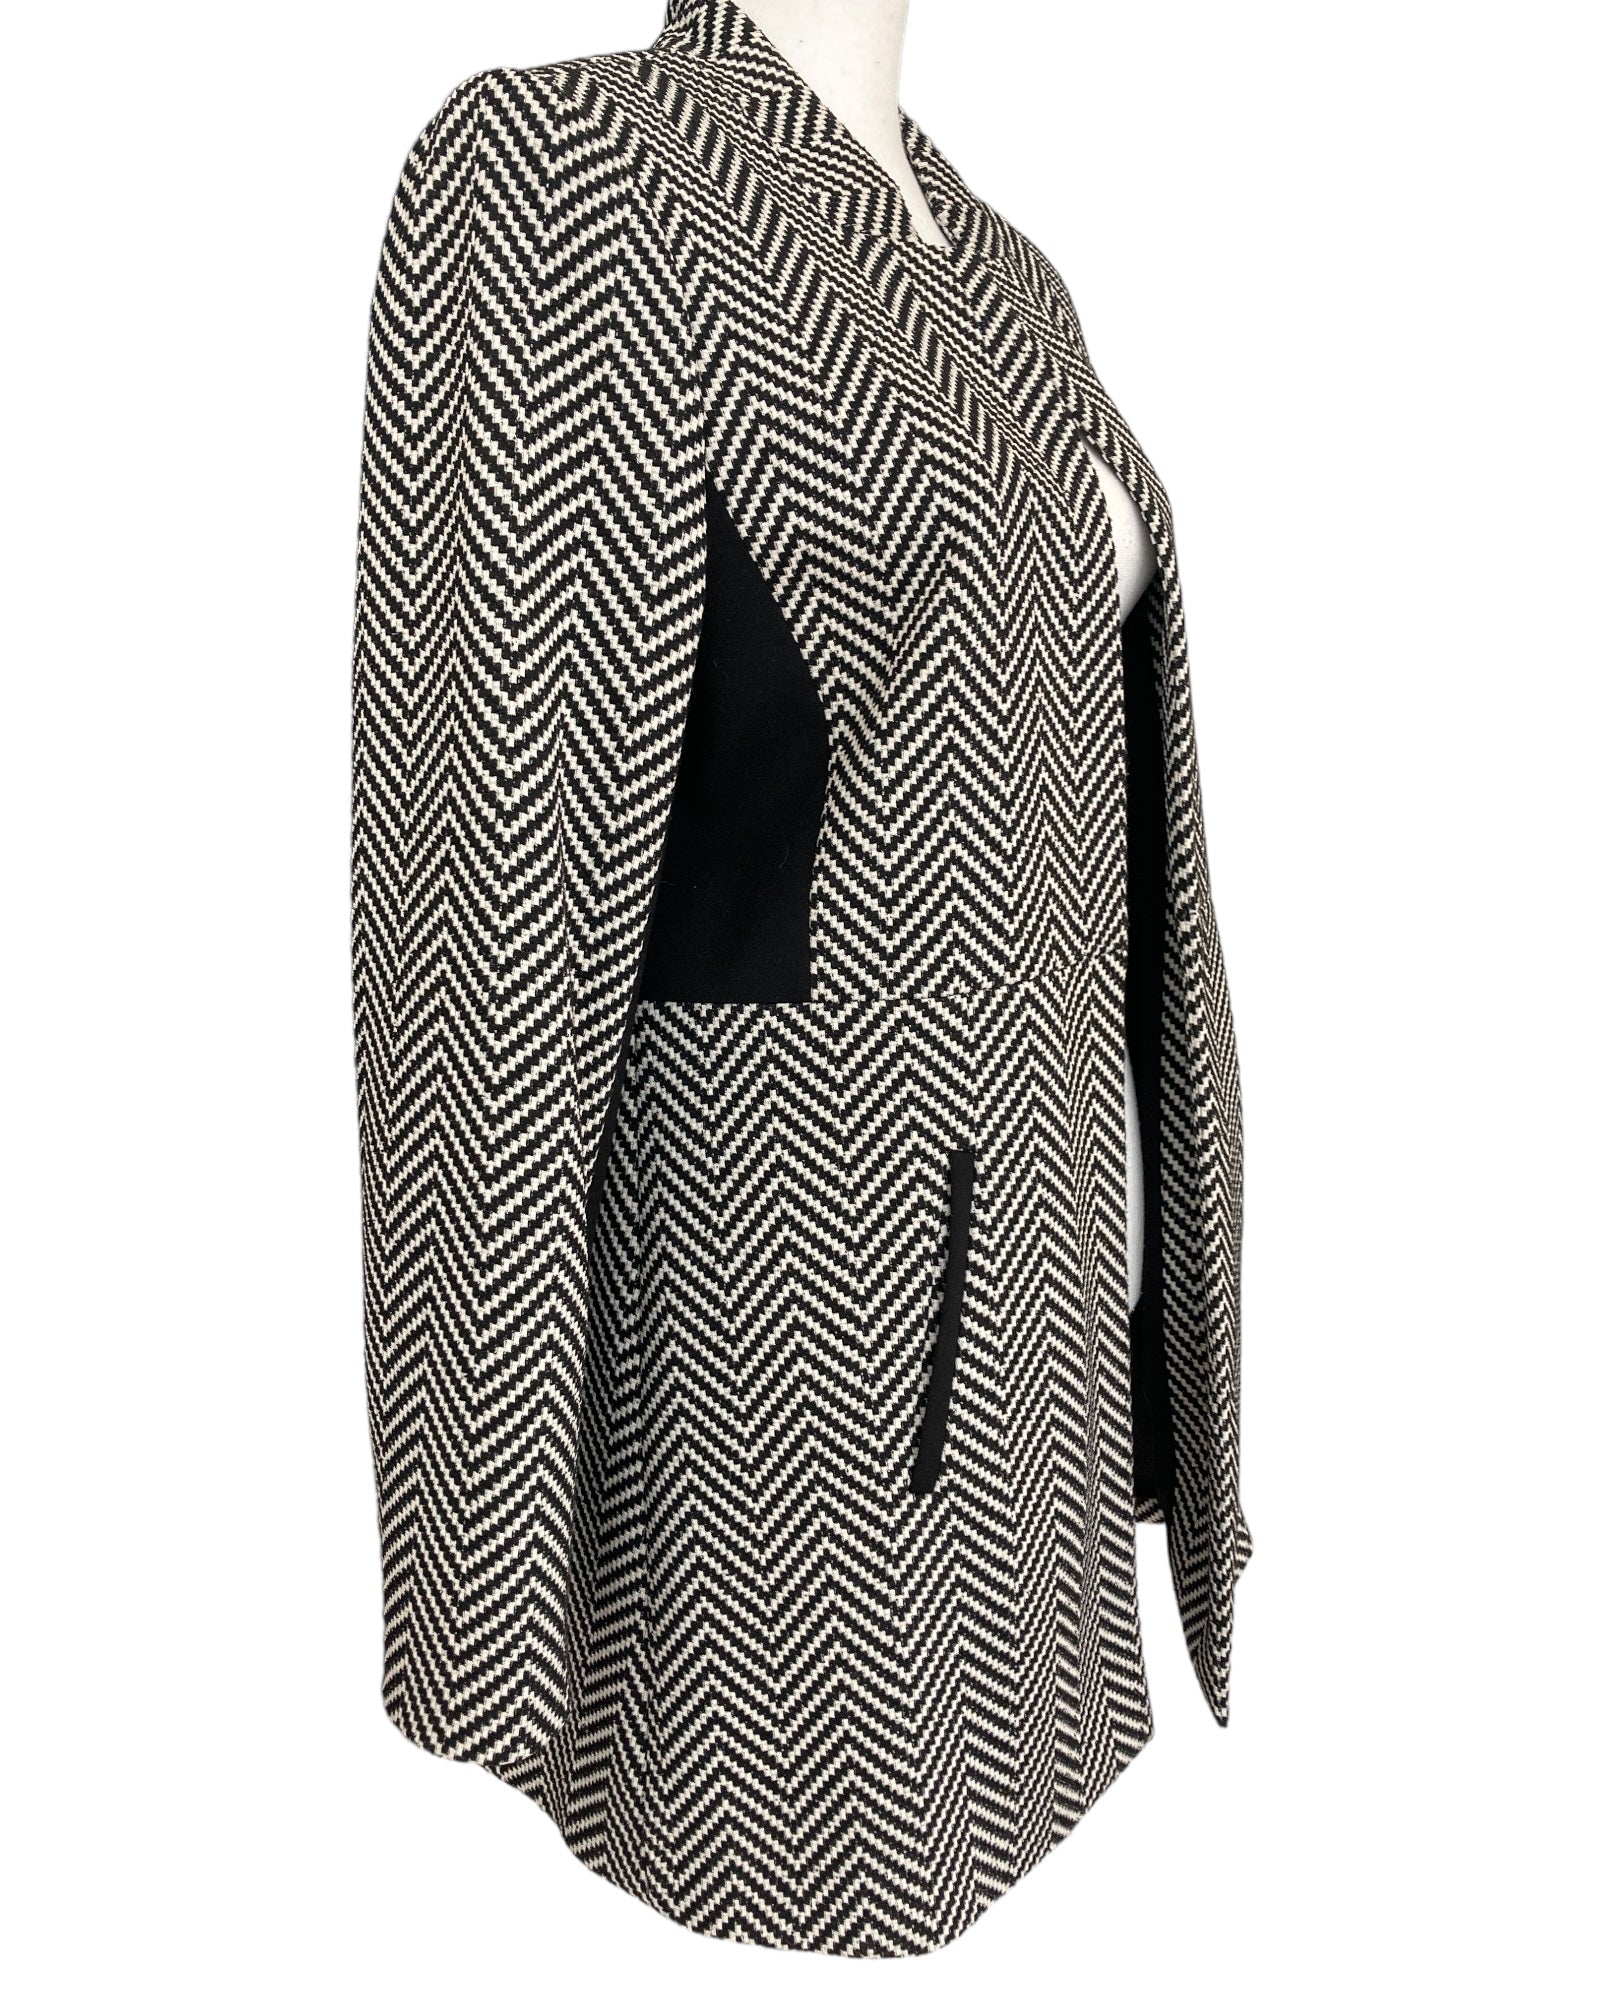 Albert Nipon Boutique Vintage Black and White Knit Suit, 8